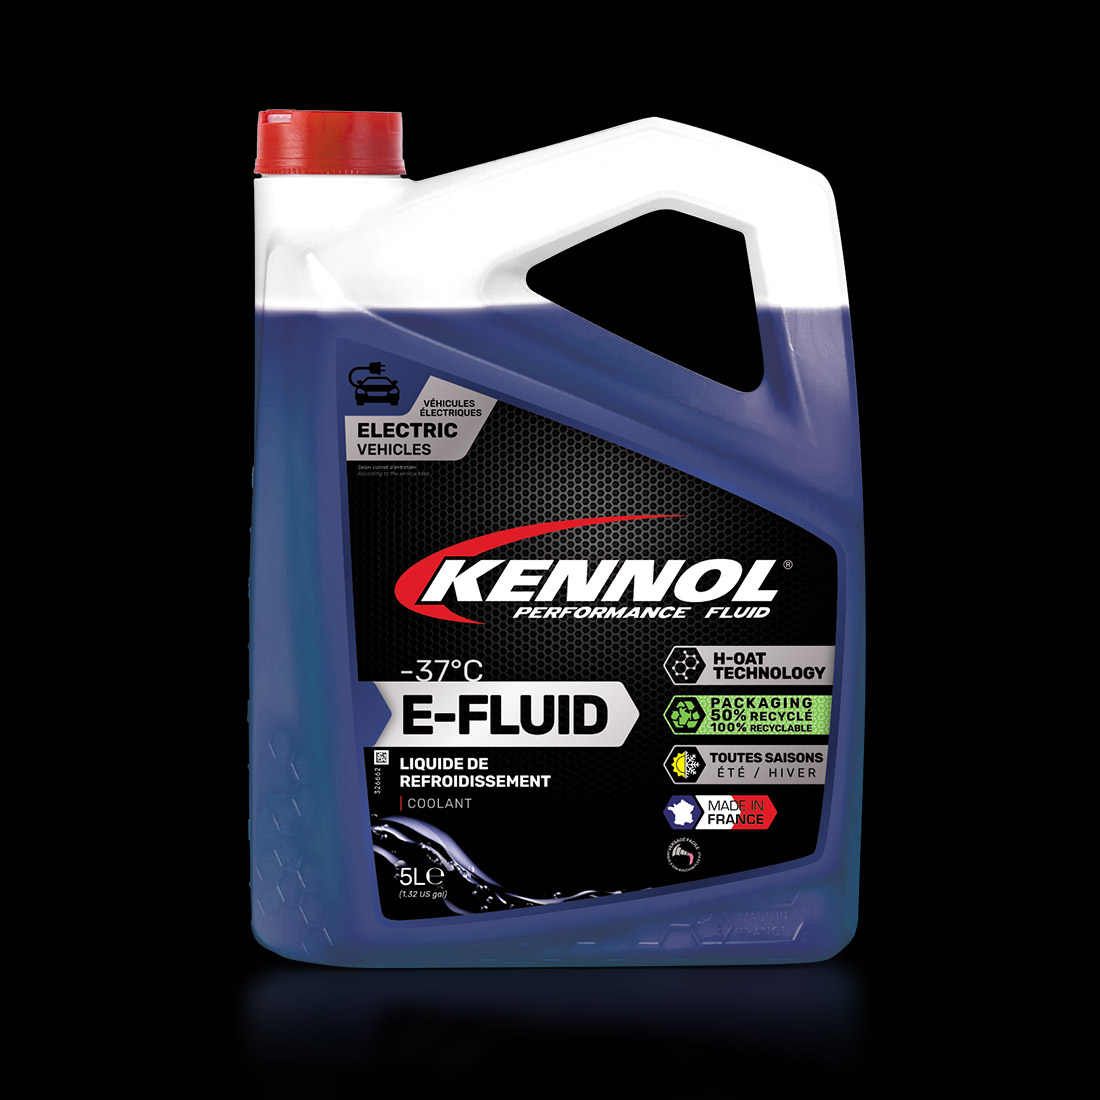 LR E-FLUID -37°C  KENNOL - Performance Fluid